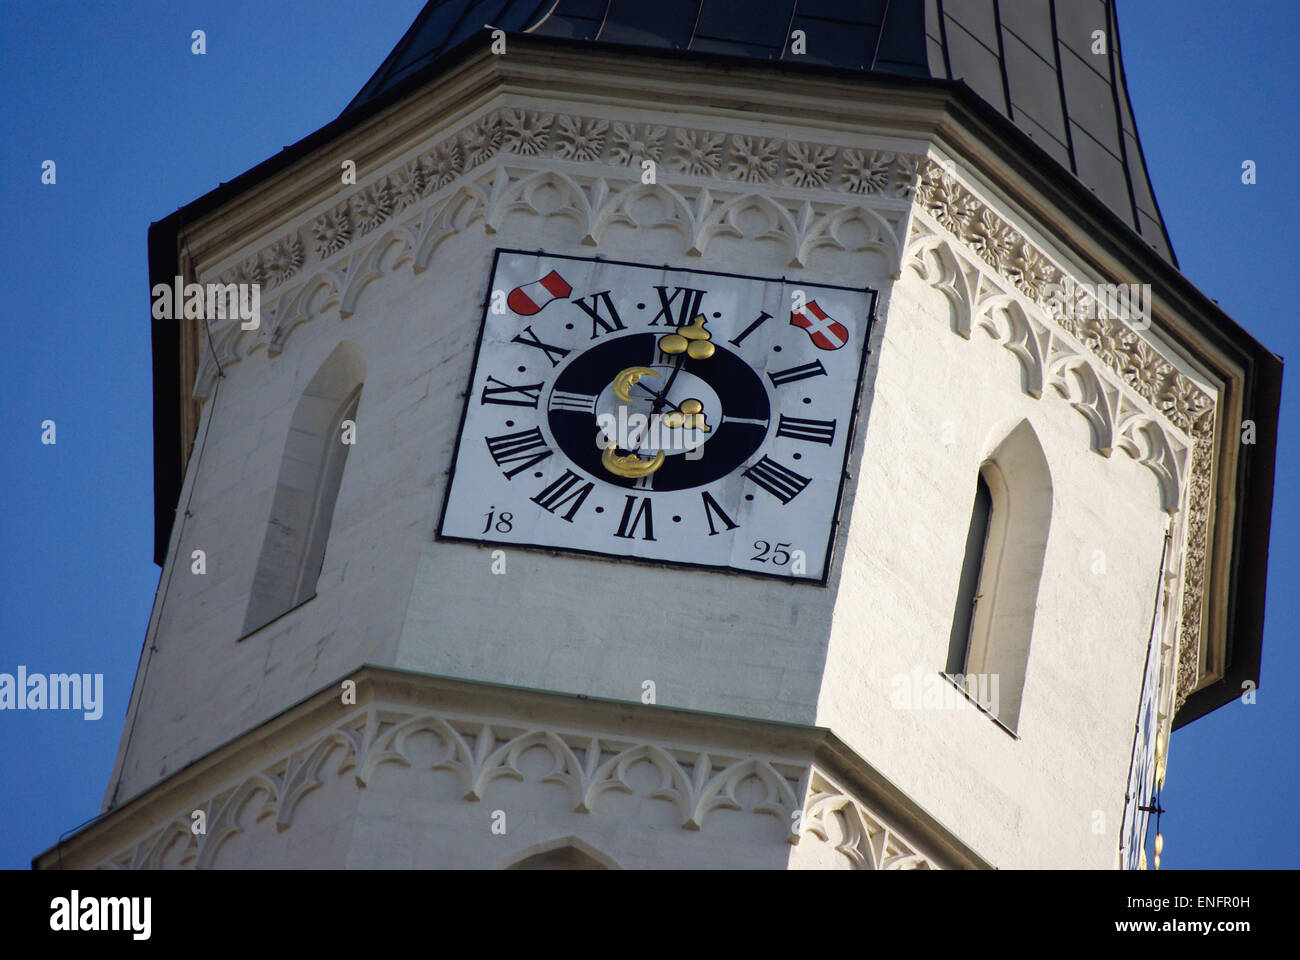 Vienne Autriche tourisme journée ensoleillée, ciel bleu Banque D'Images